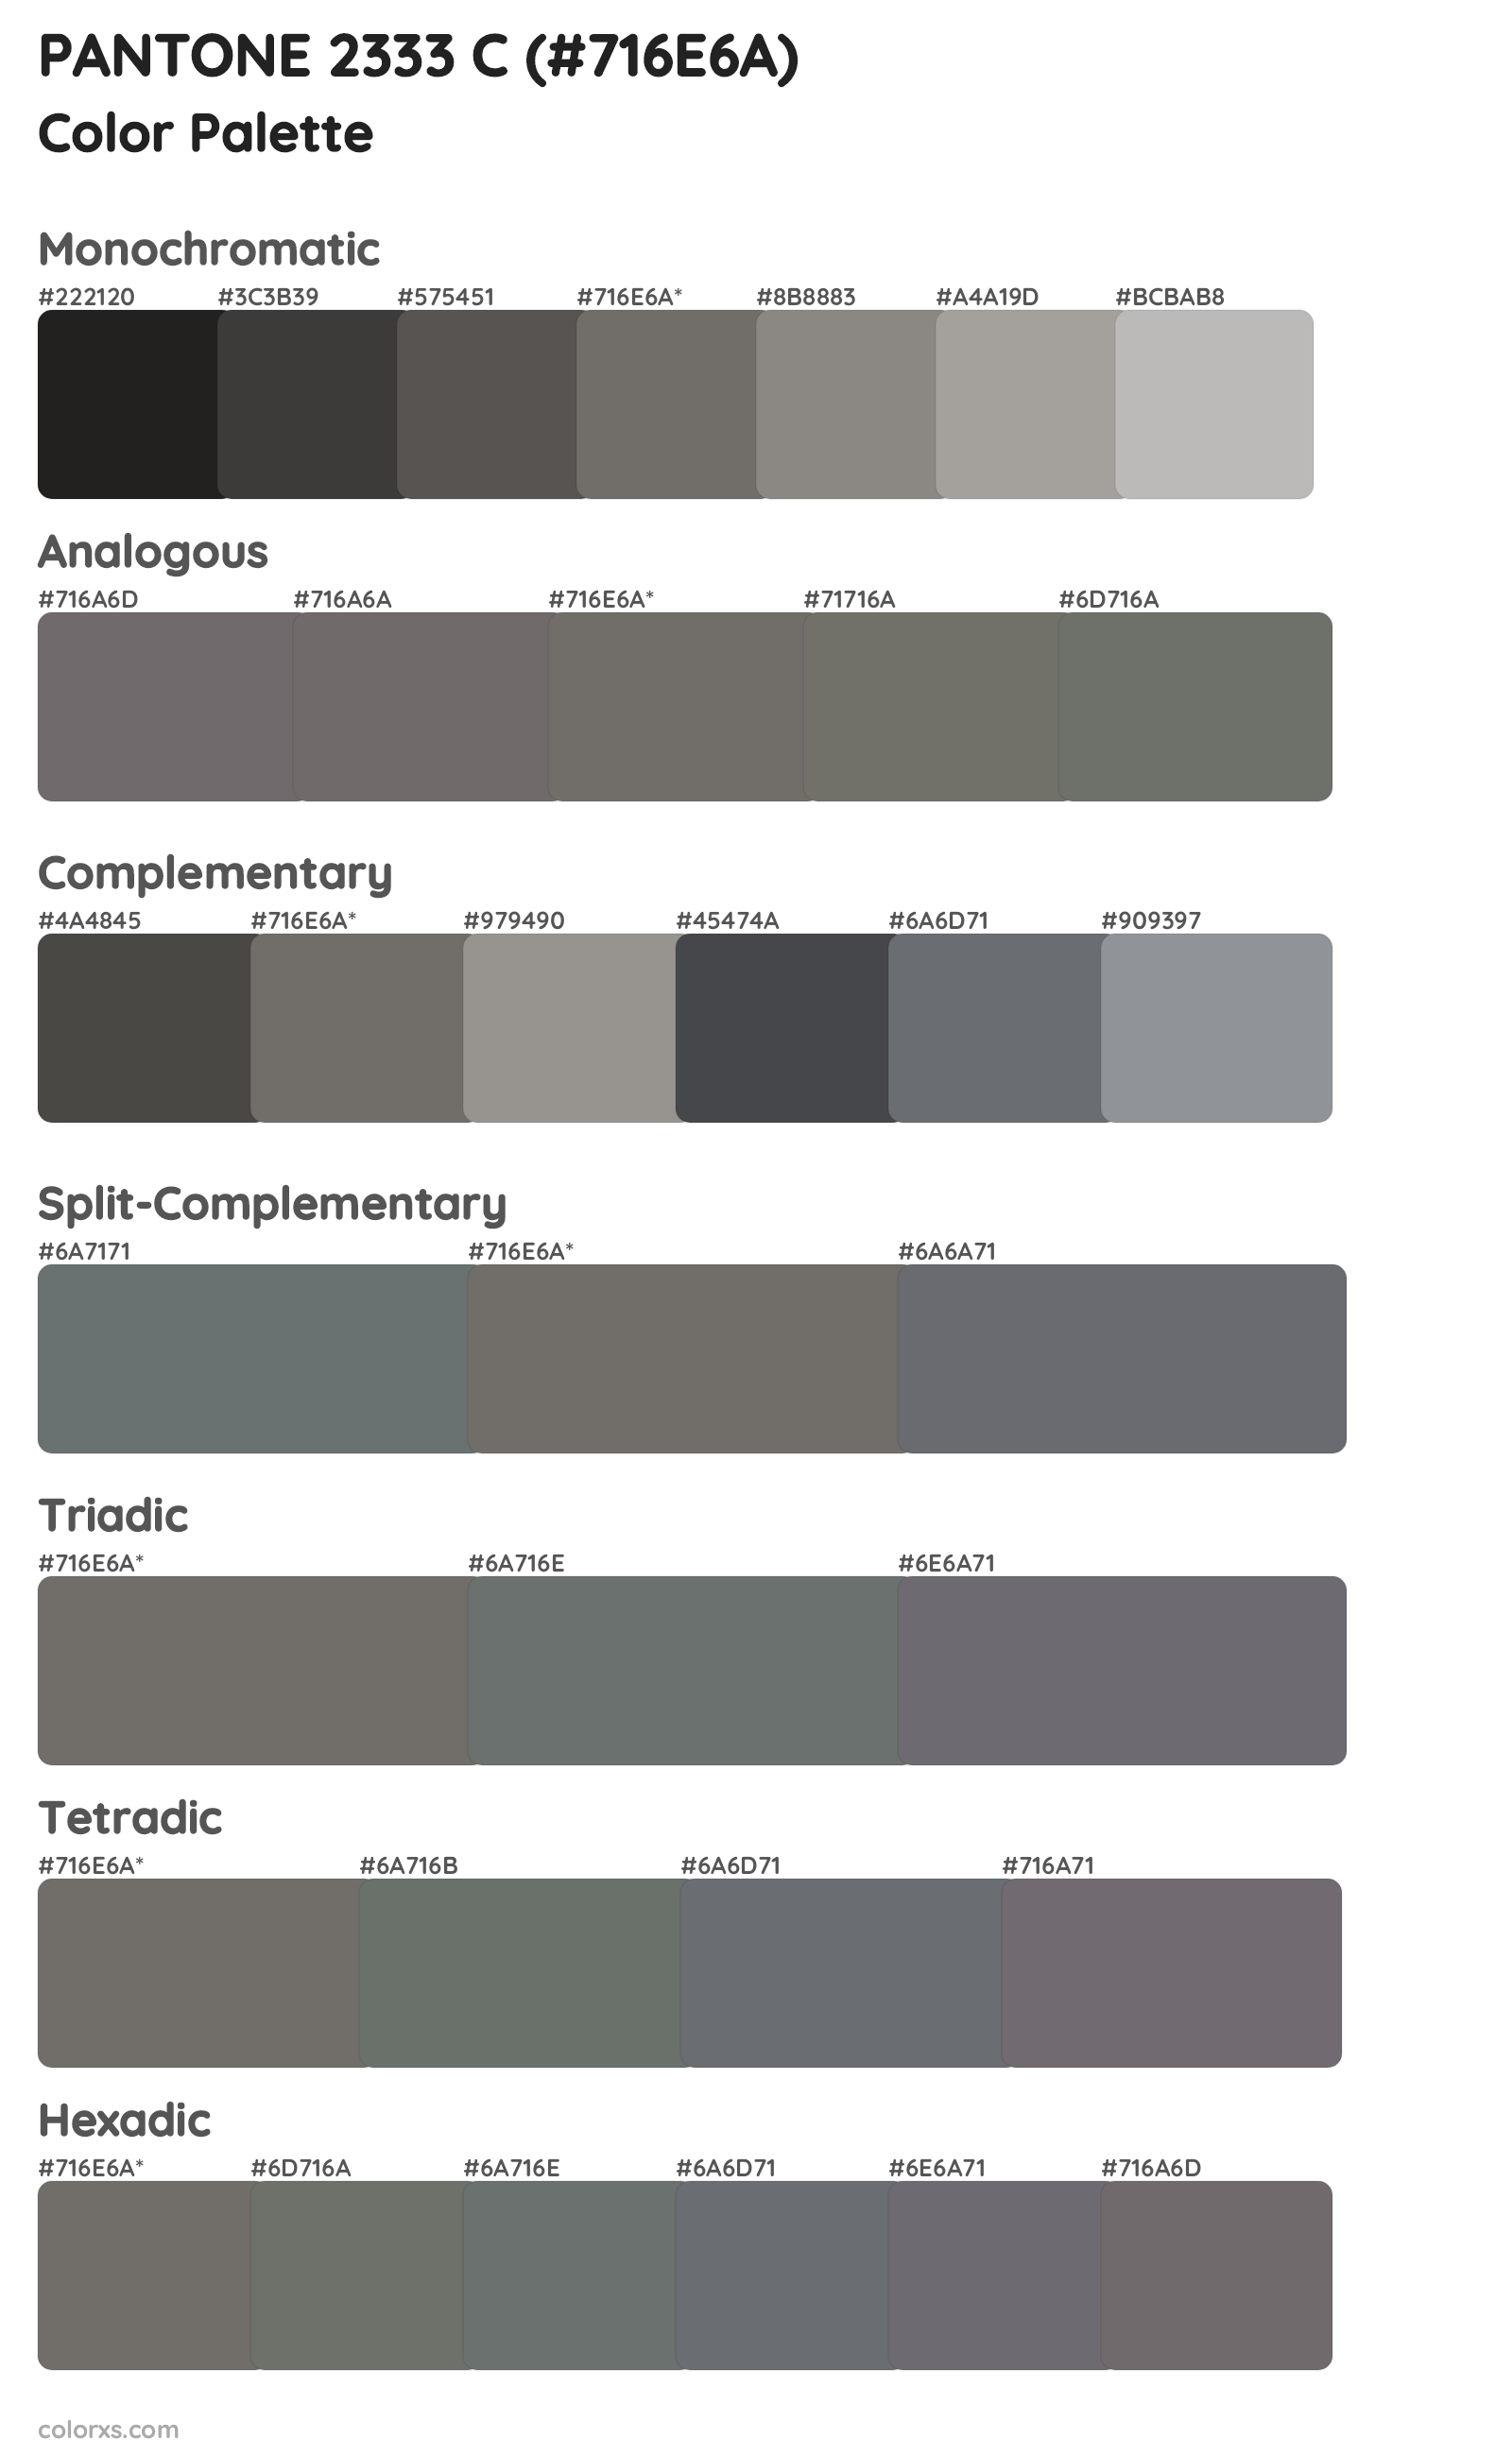 PANTONE 2333 C Color Scheme Palettes